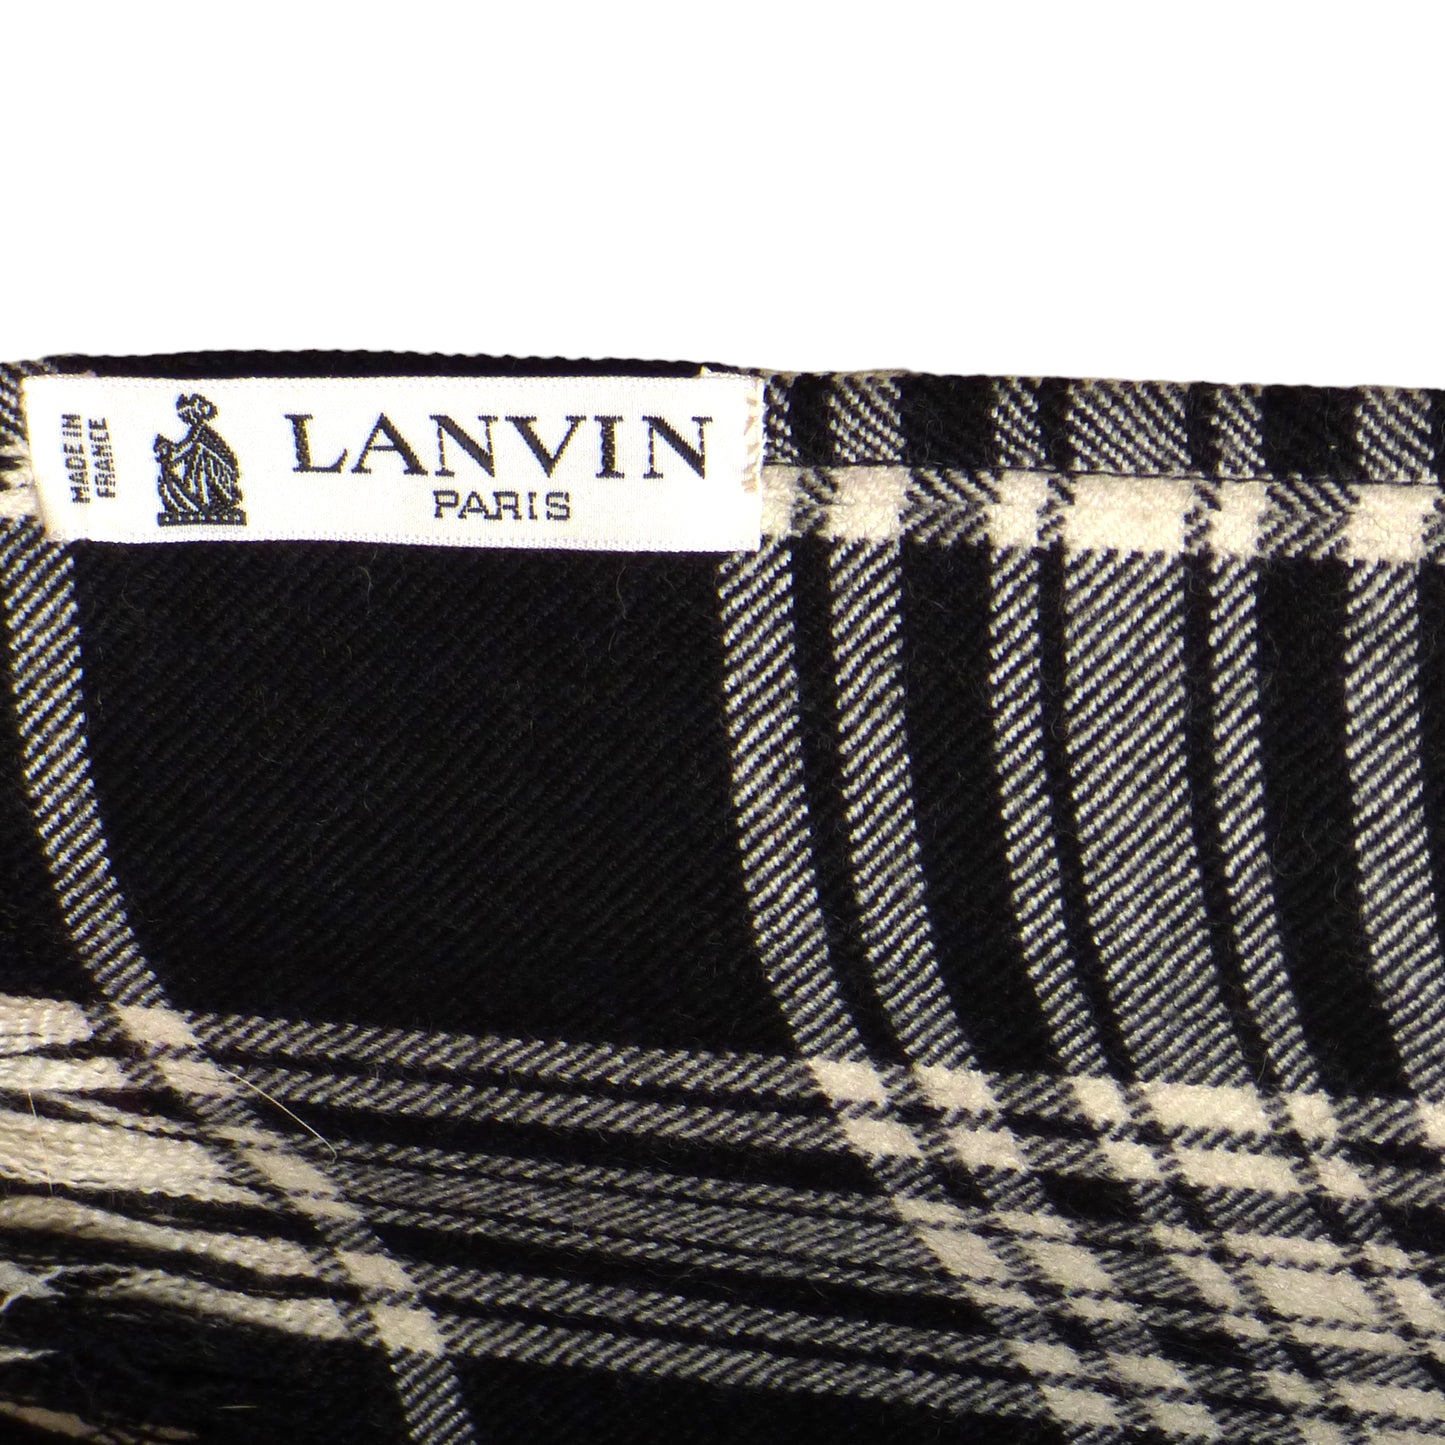 LANVIN- 1990s Black & White Wool Plaid Wrap